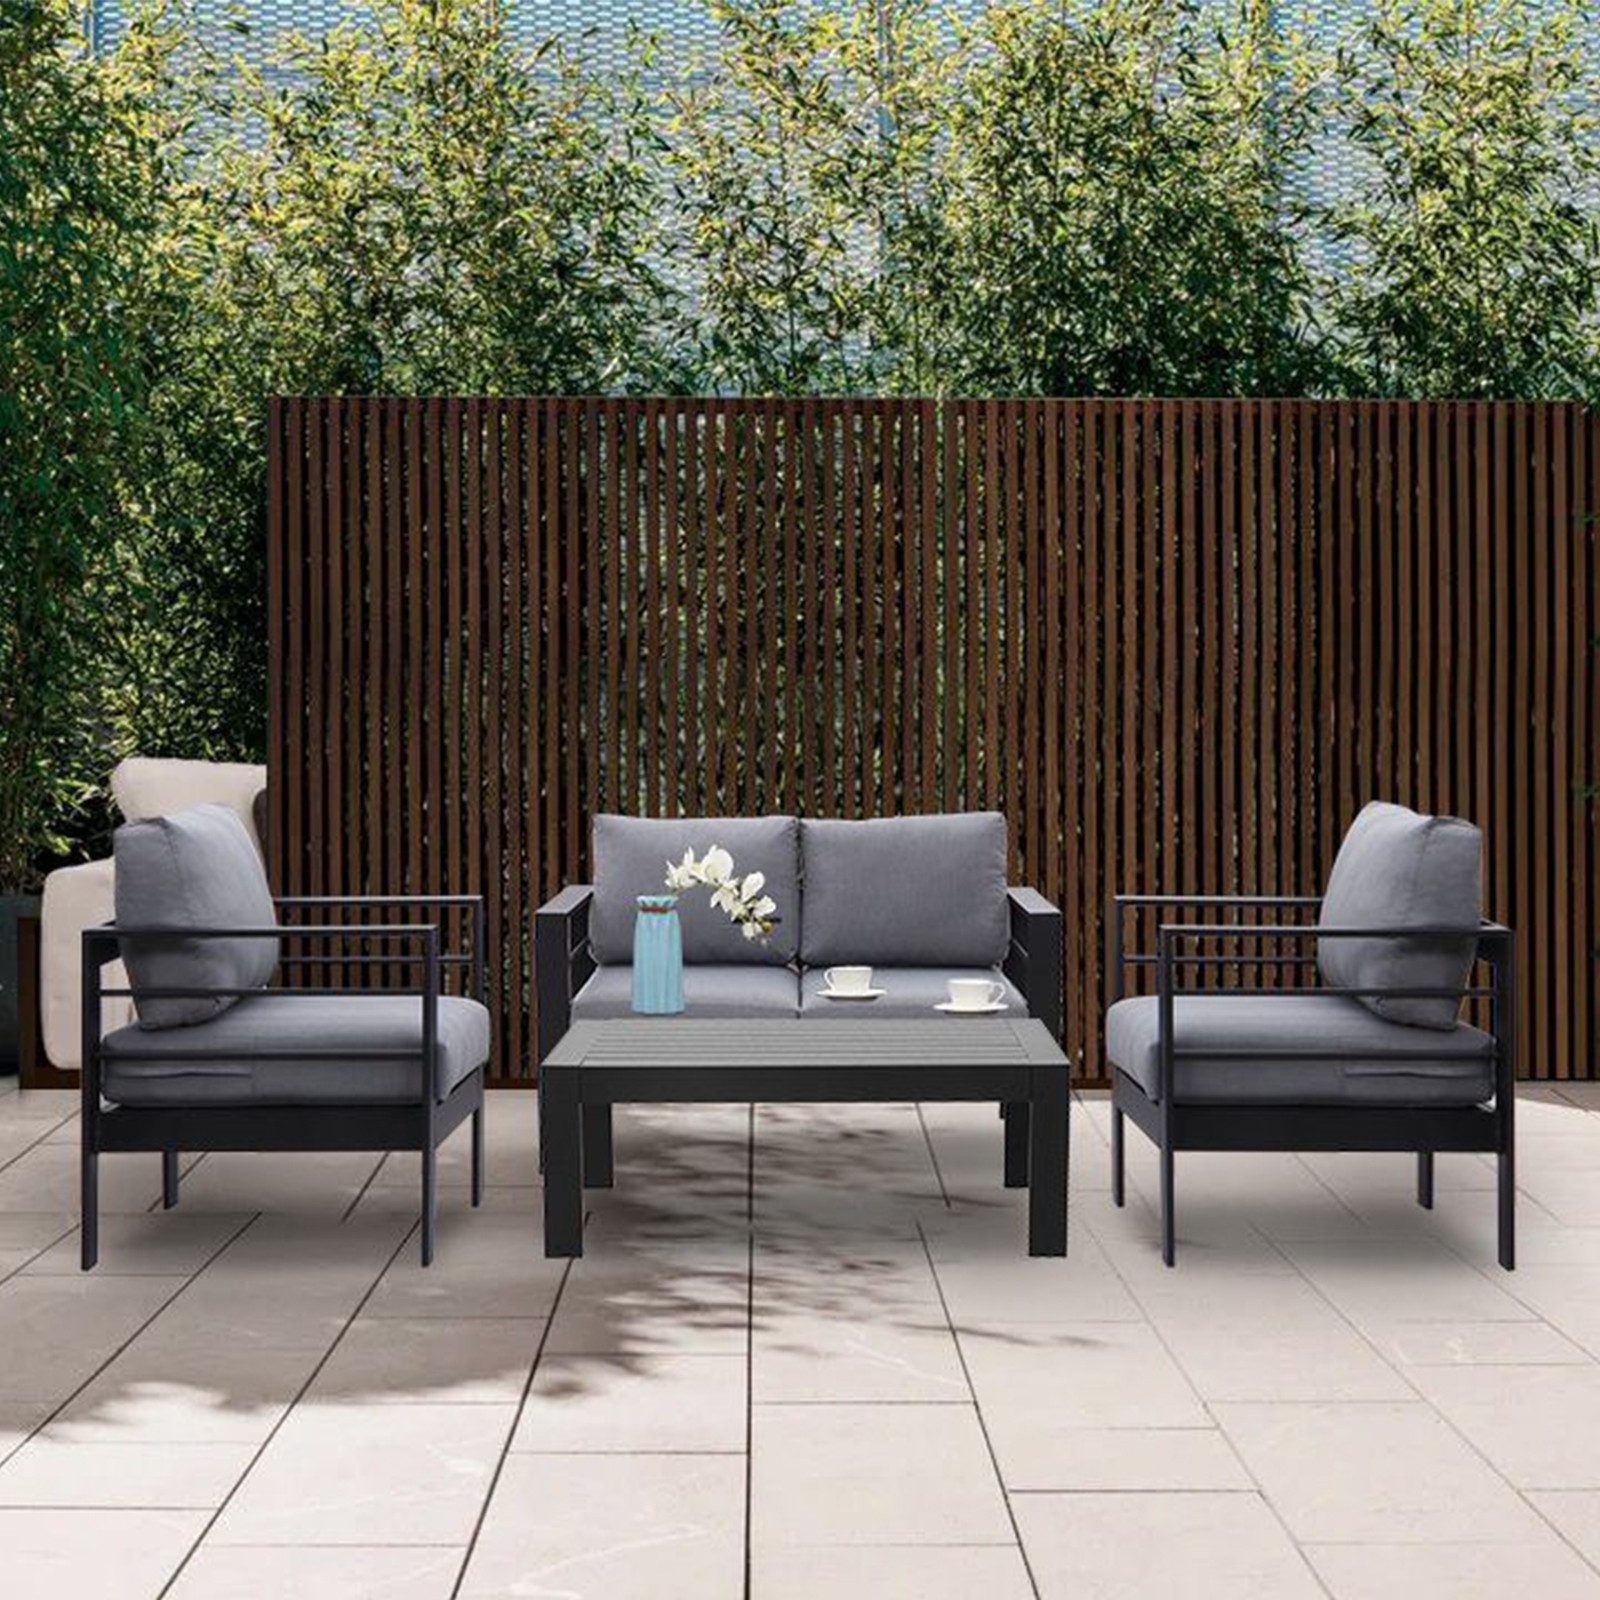 MeXo Gartenlounge-Set Gartenmöbel Set Aluminium Loungeset für Terrasse Balkon, (Set, 4-tlg., 1×2-Sitzer Sofa, 2×Sessel, 1×Tisch, 8×Auflagen), wetterfest Sitzgruppe Gartengarnitur für 3-4 Personen